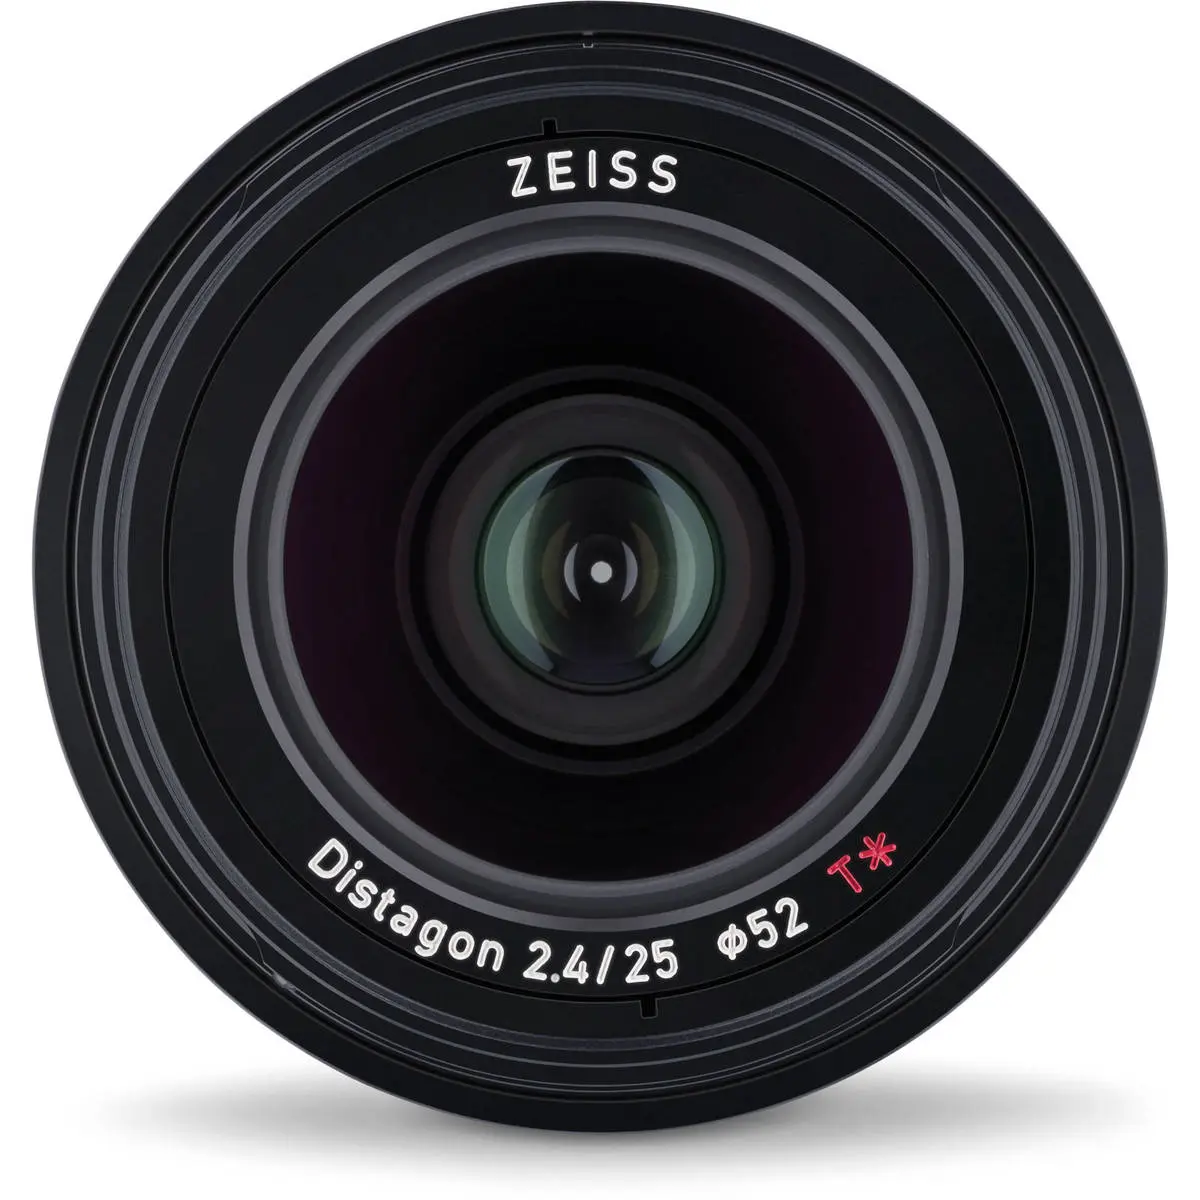 2. Carl Zeiss Loxia 2.4/25 (Sony FE) Lens